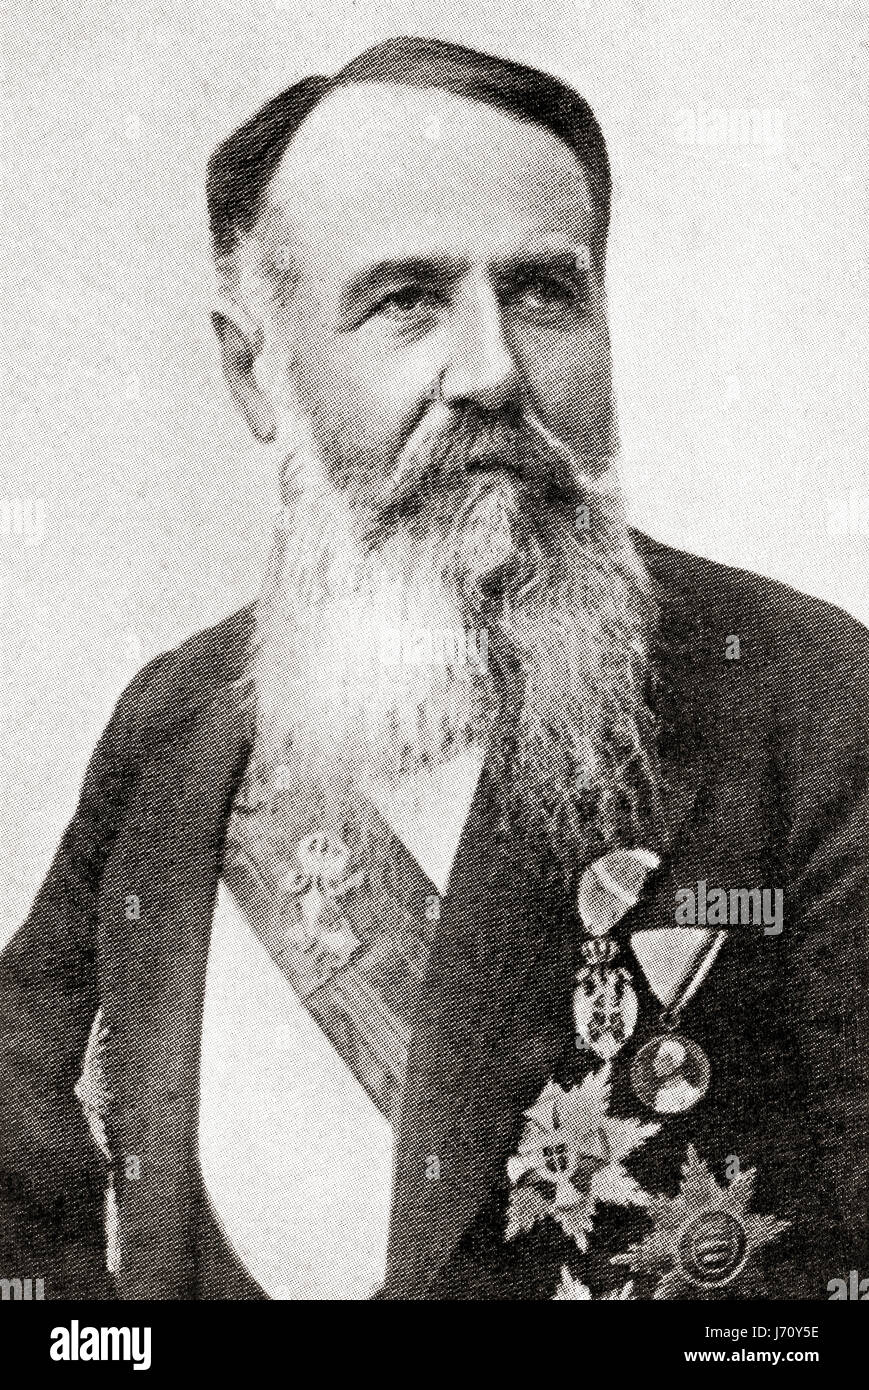 Nikola Pašić, 1845-1926. Serbische und jugoslawische Politiker, Diplomat und Premierminister von Jugoslawien.  Hutchinson Geschichte der Nationen veröffentlichte 1915. Stockfoto